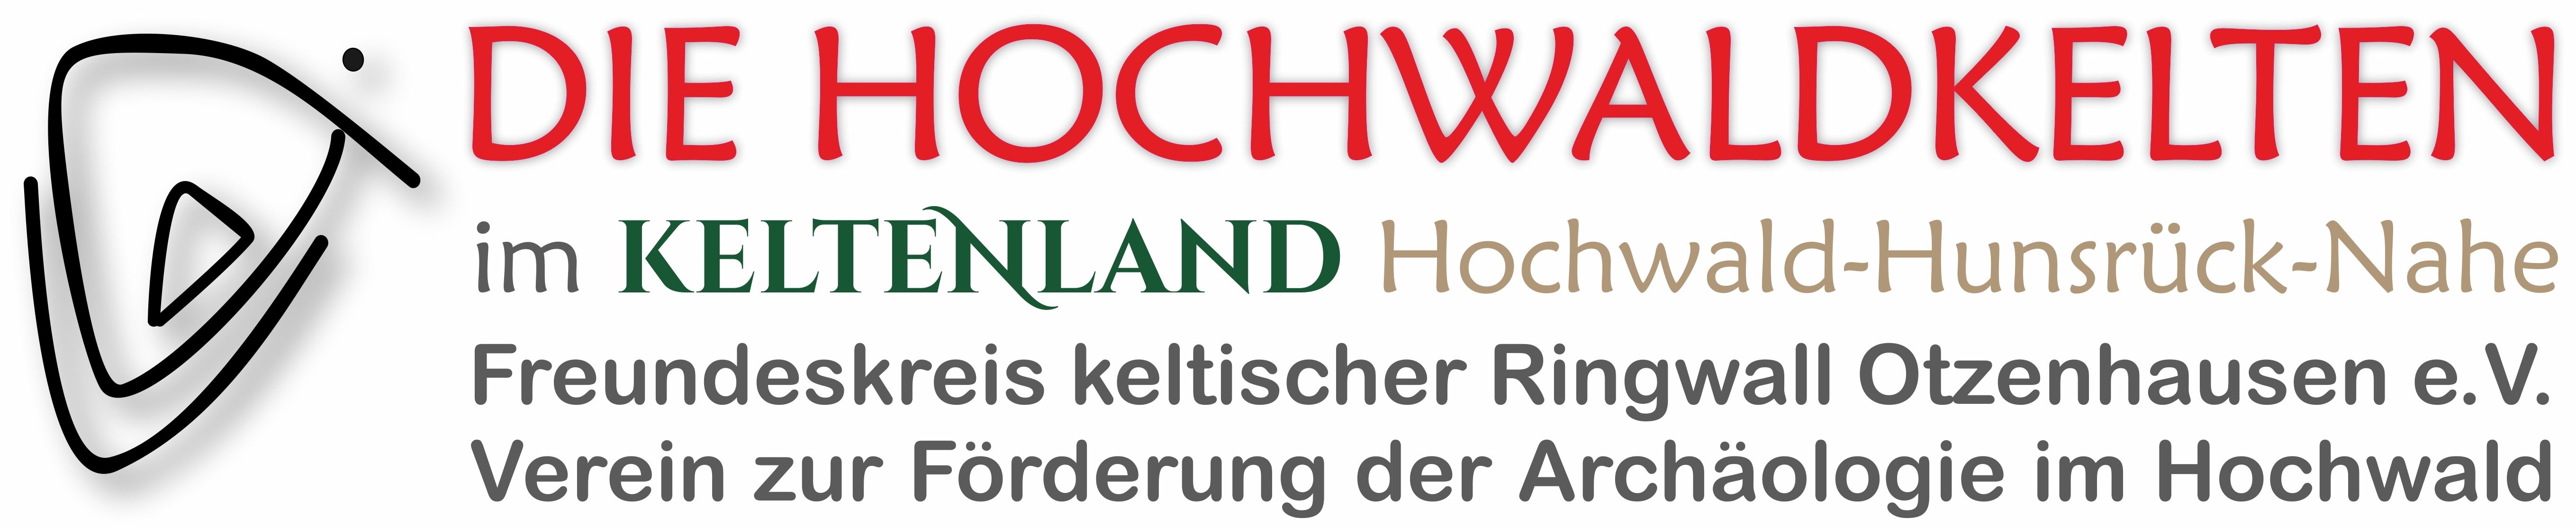 Profilbild des Vereins Freundeskreis keltischer Ringwall Otzenhausen